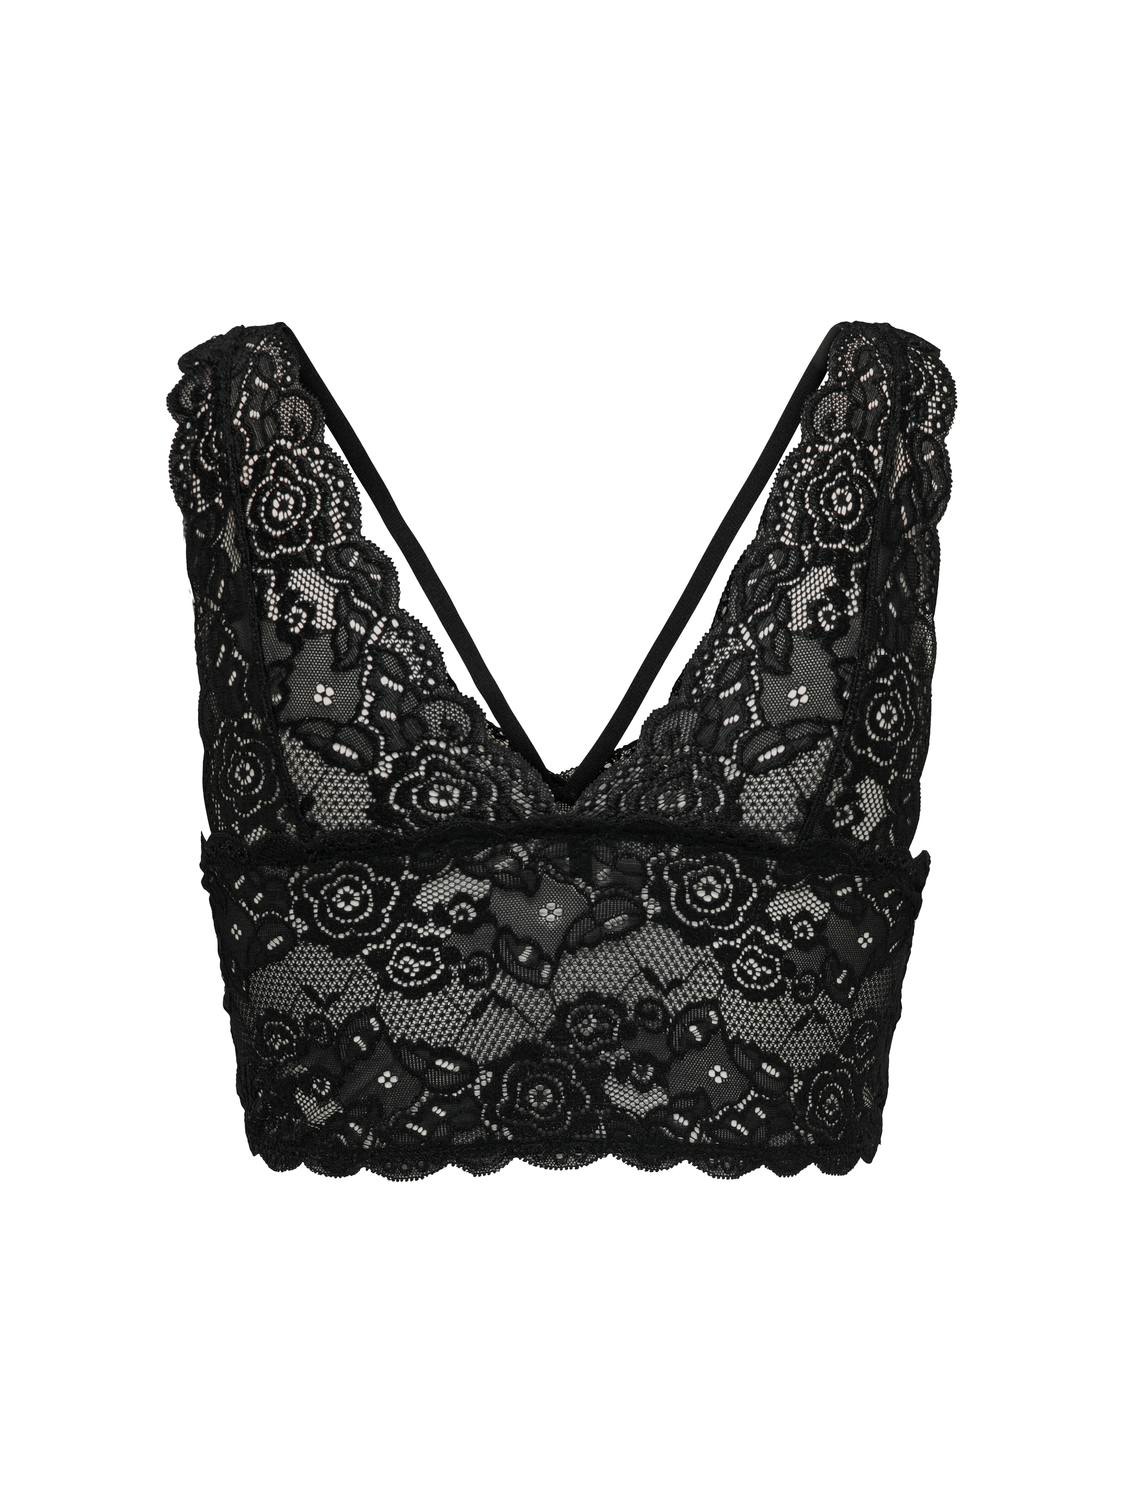 ONLY Lace bra -Black - 15157963